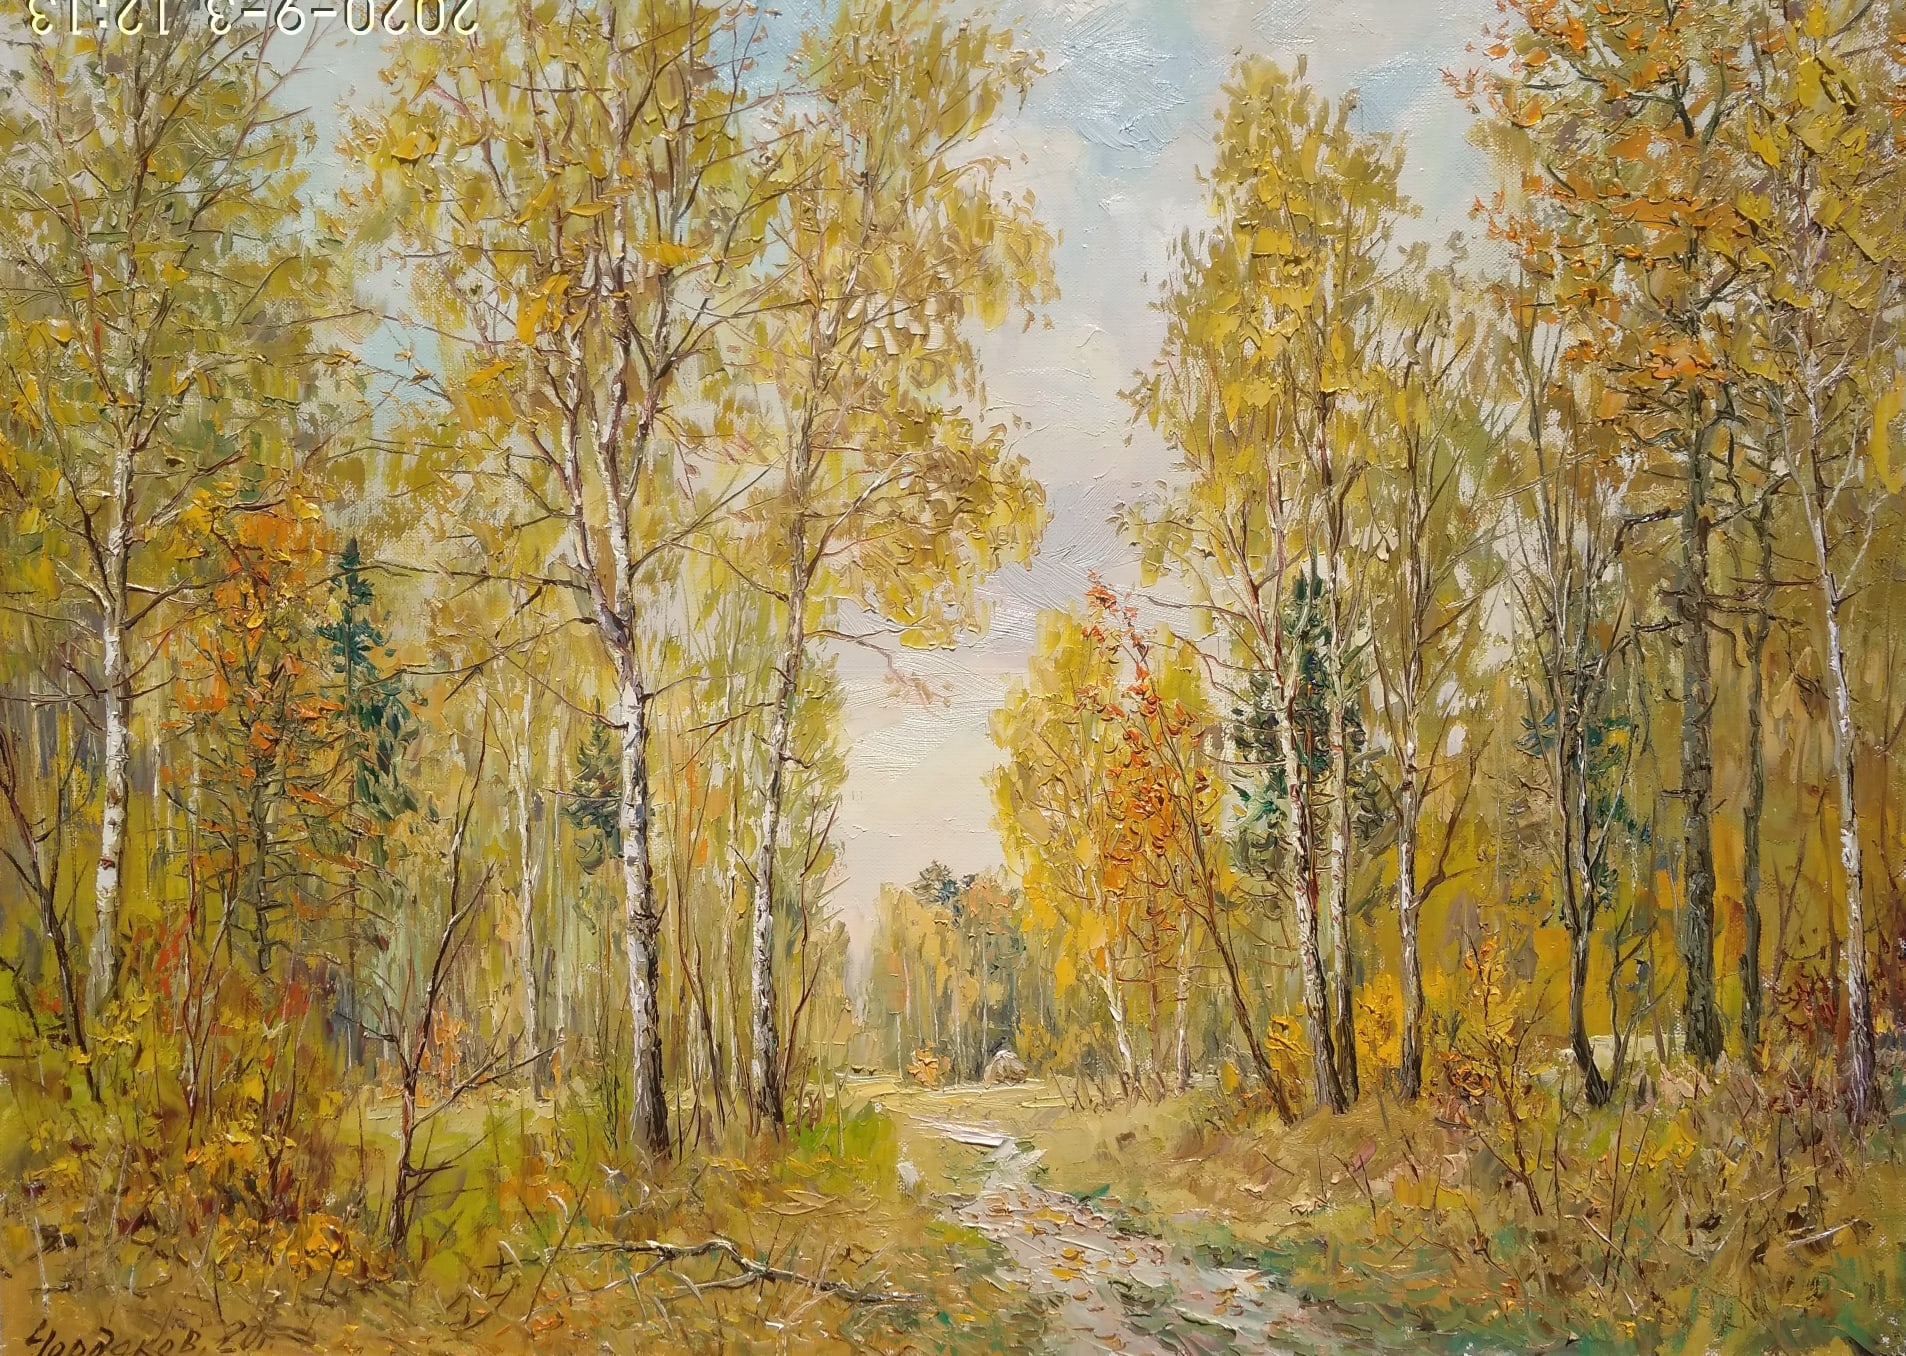 Осень в картинах скандинавских художников